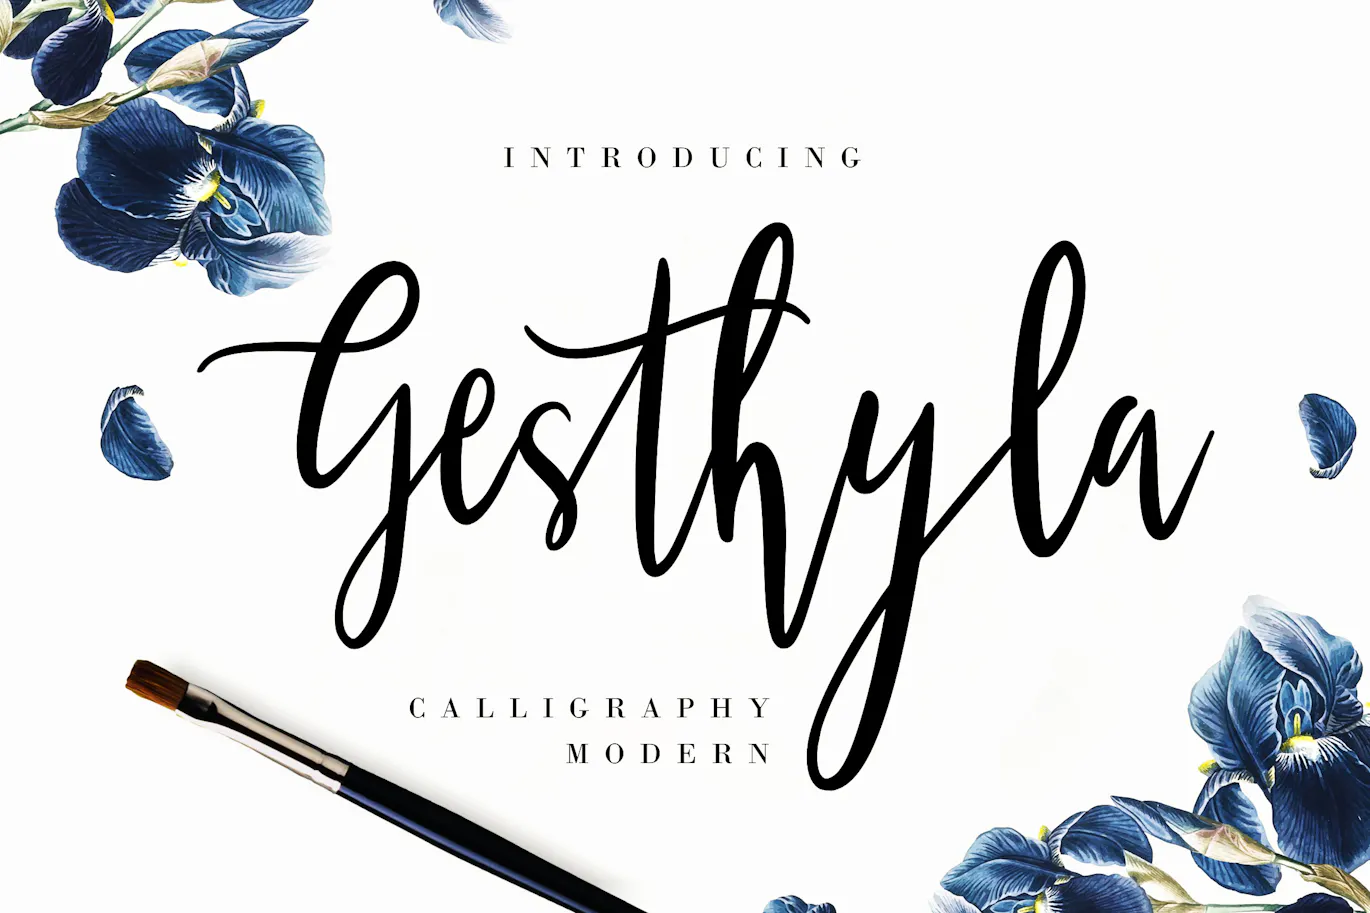 优雅自然的手写书法现代字体 - Gesthyla Calligraphy Wedding Font 设计字体 第1张